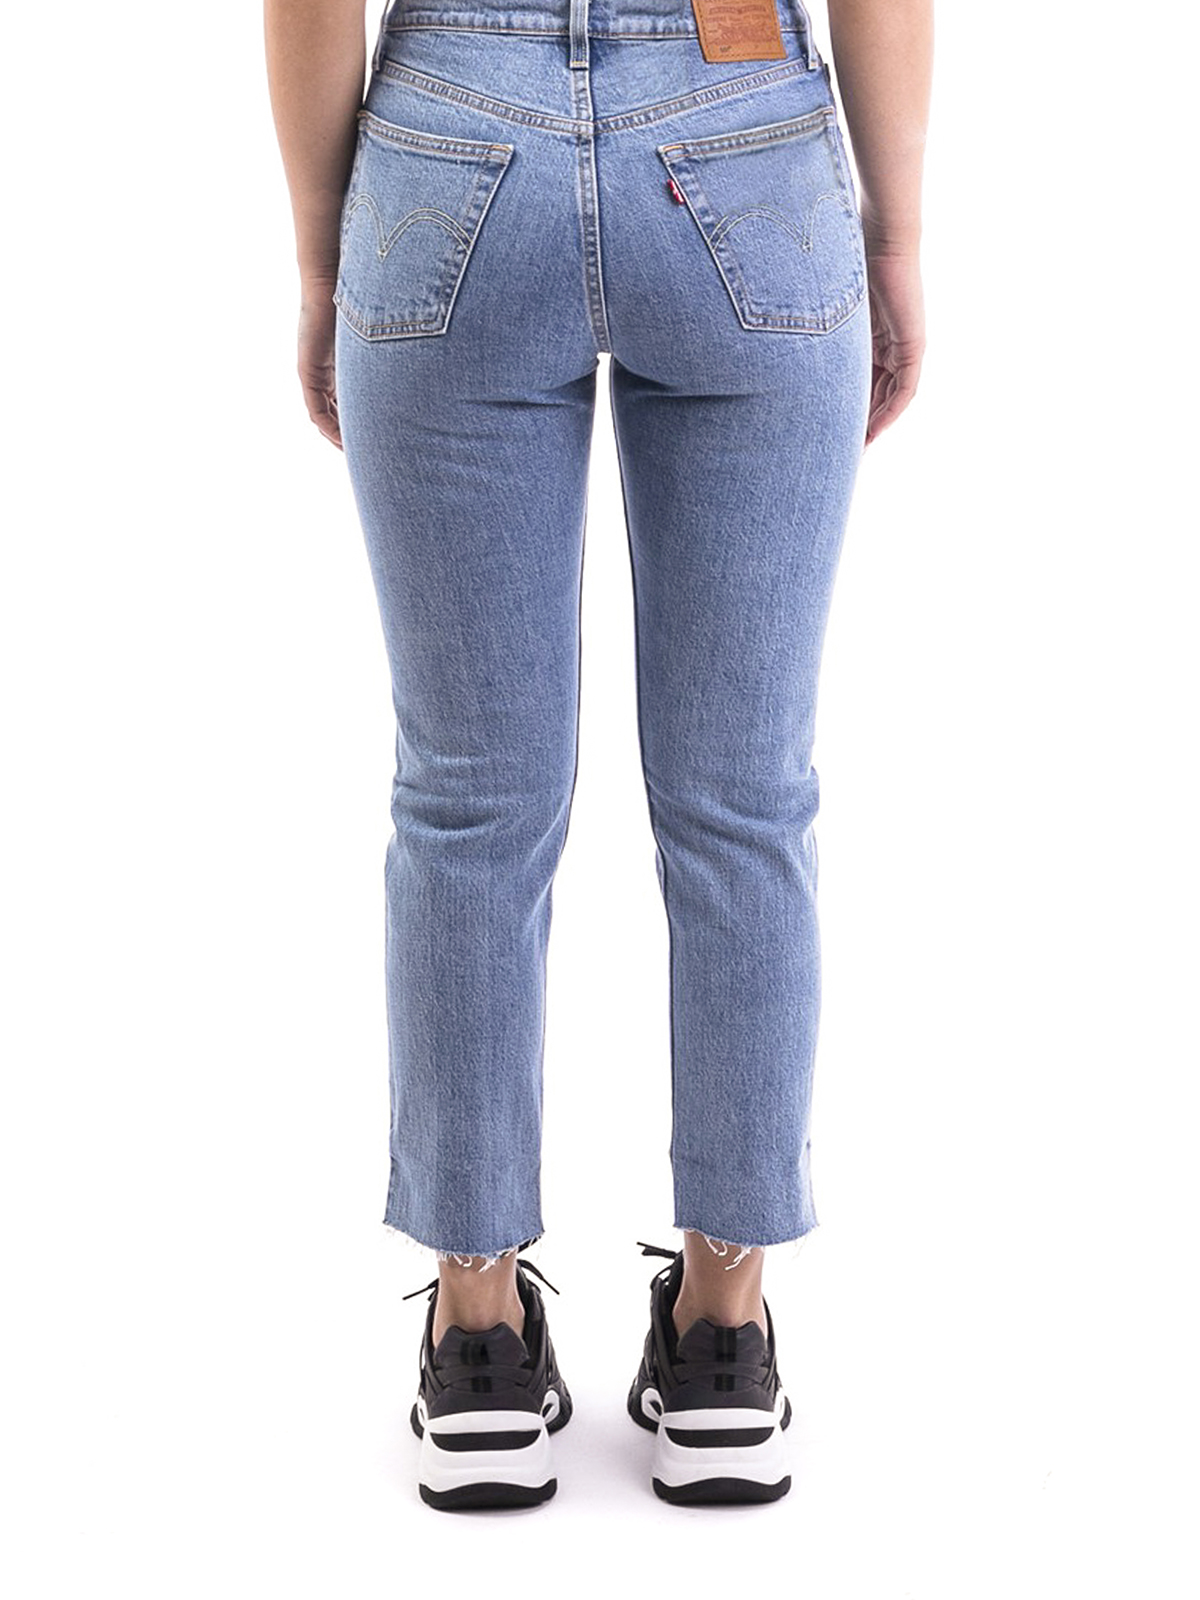 levis 501 original cropped jeans